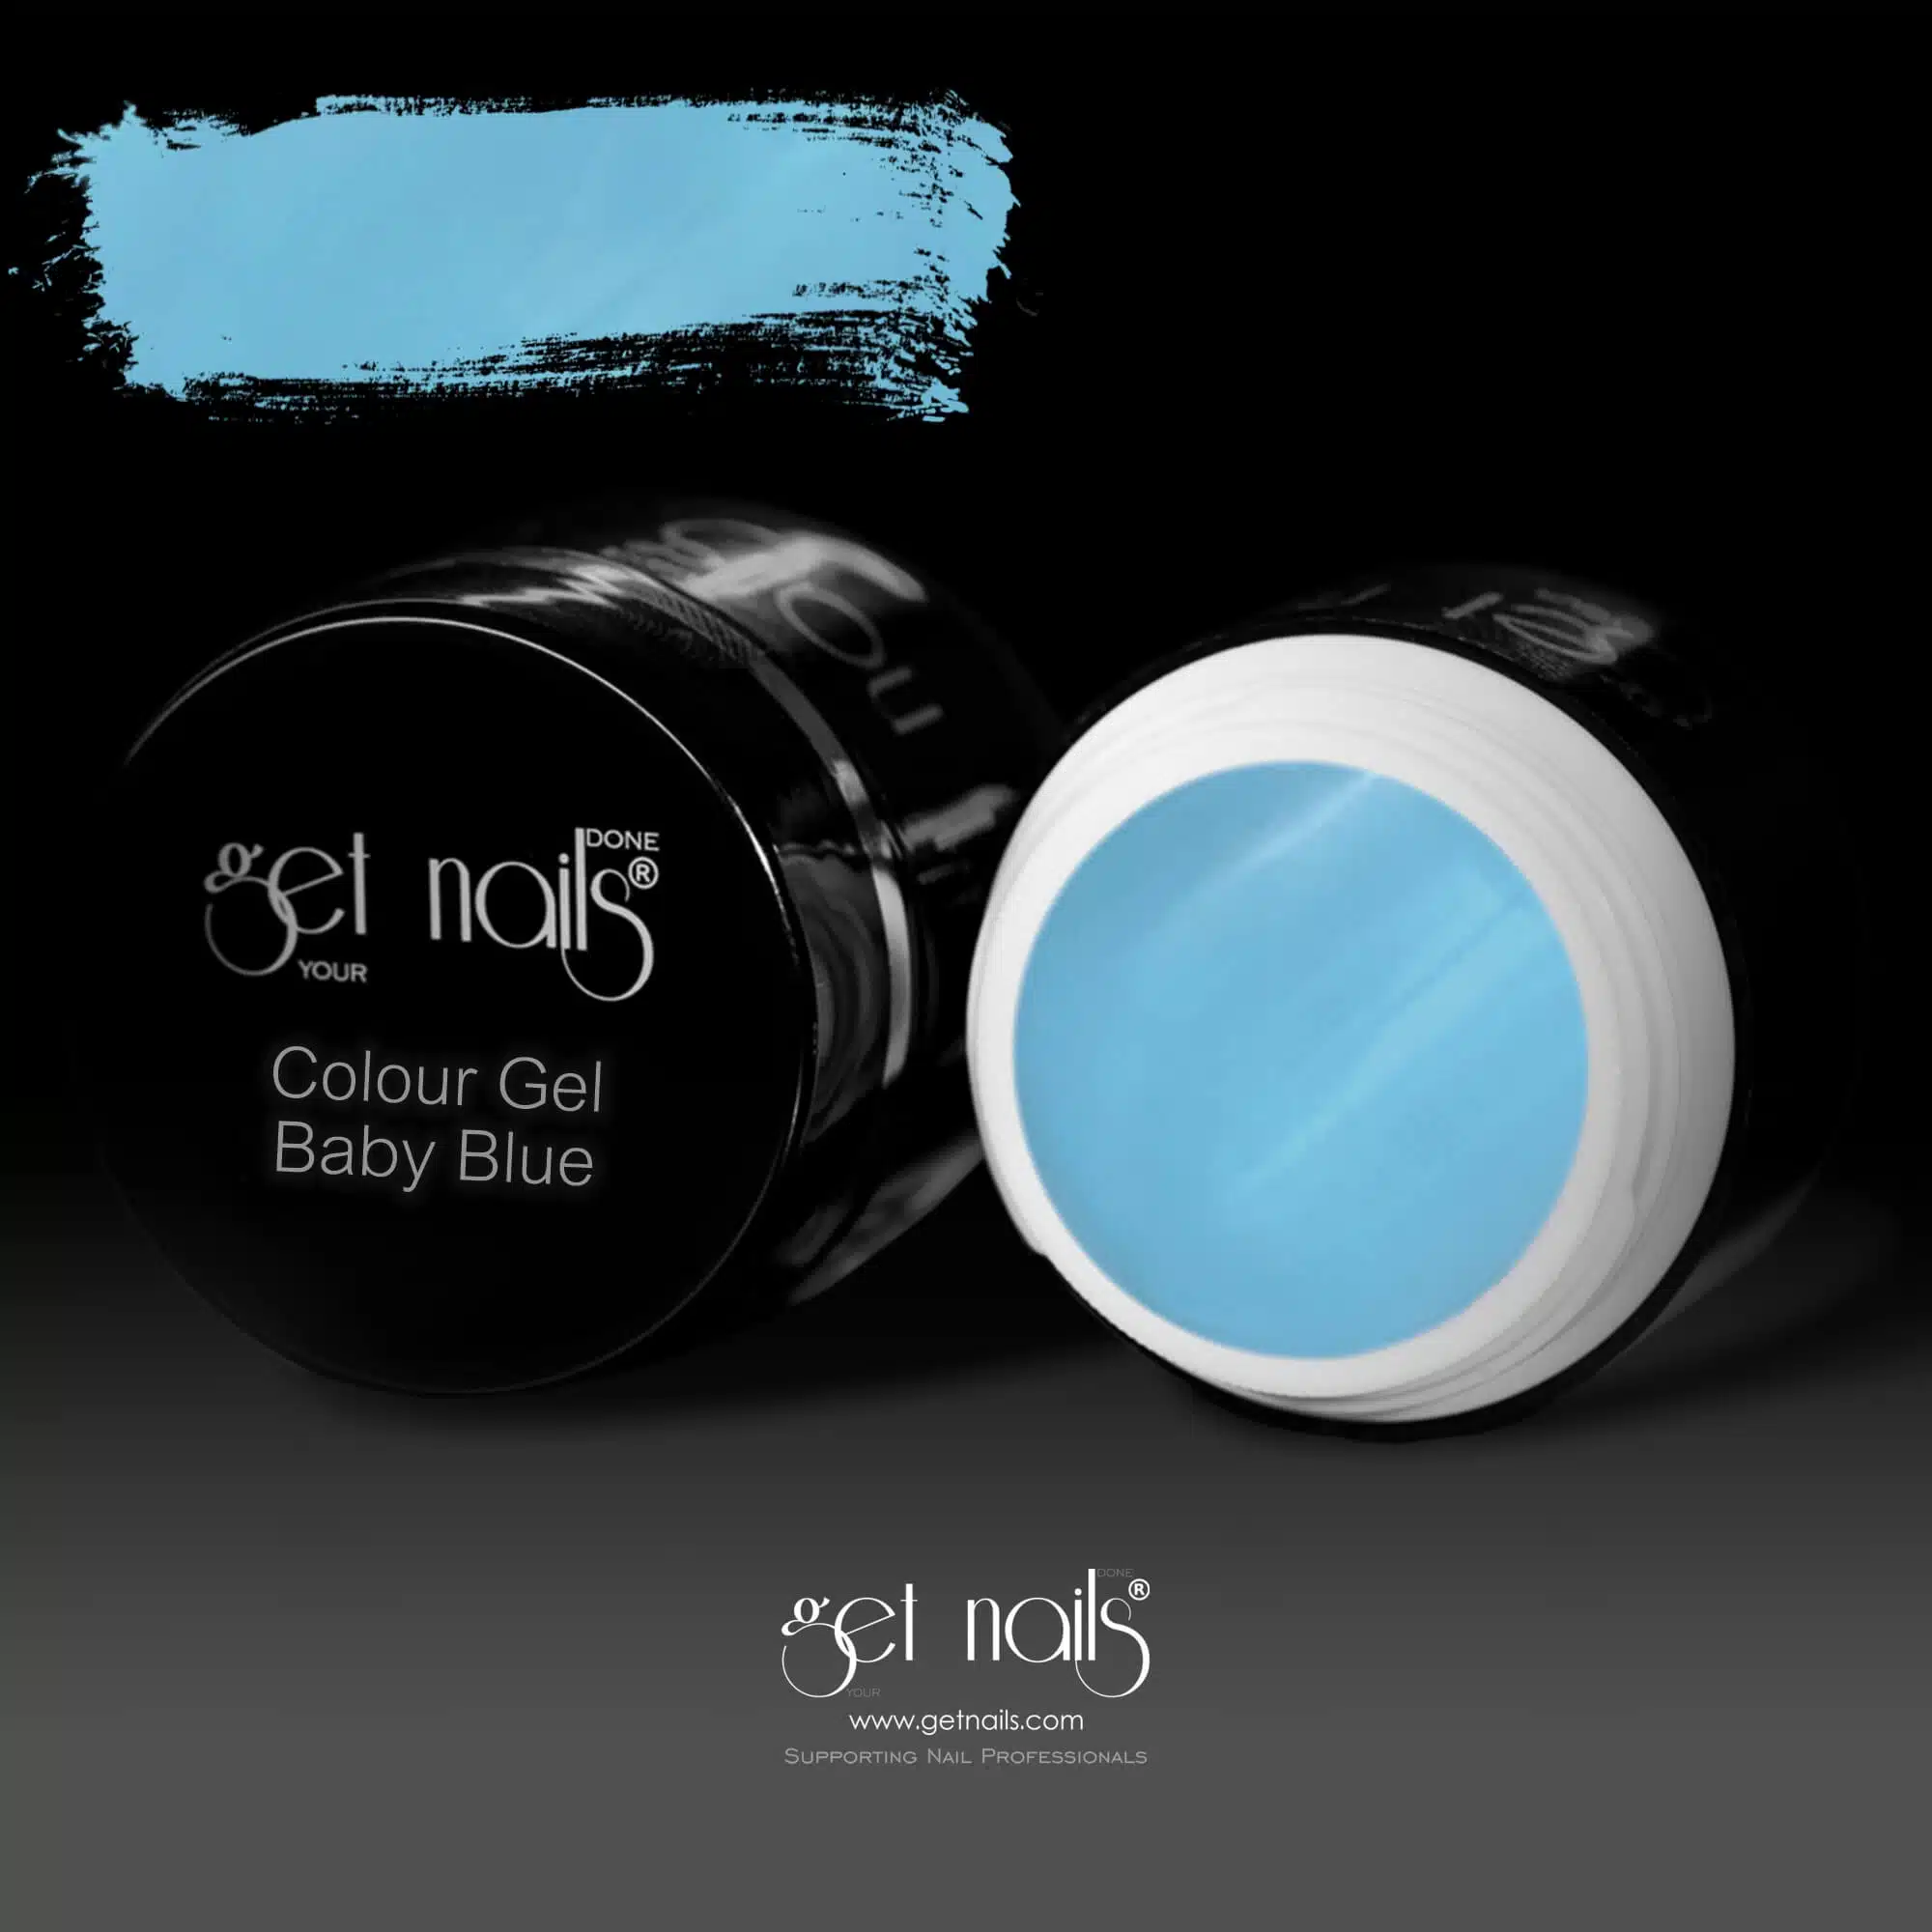 Get Nails Austria - Цветной гель Baby Blue 5g